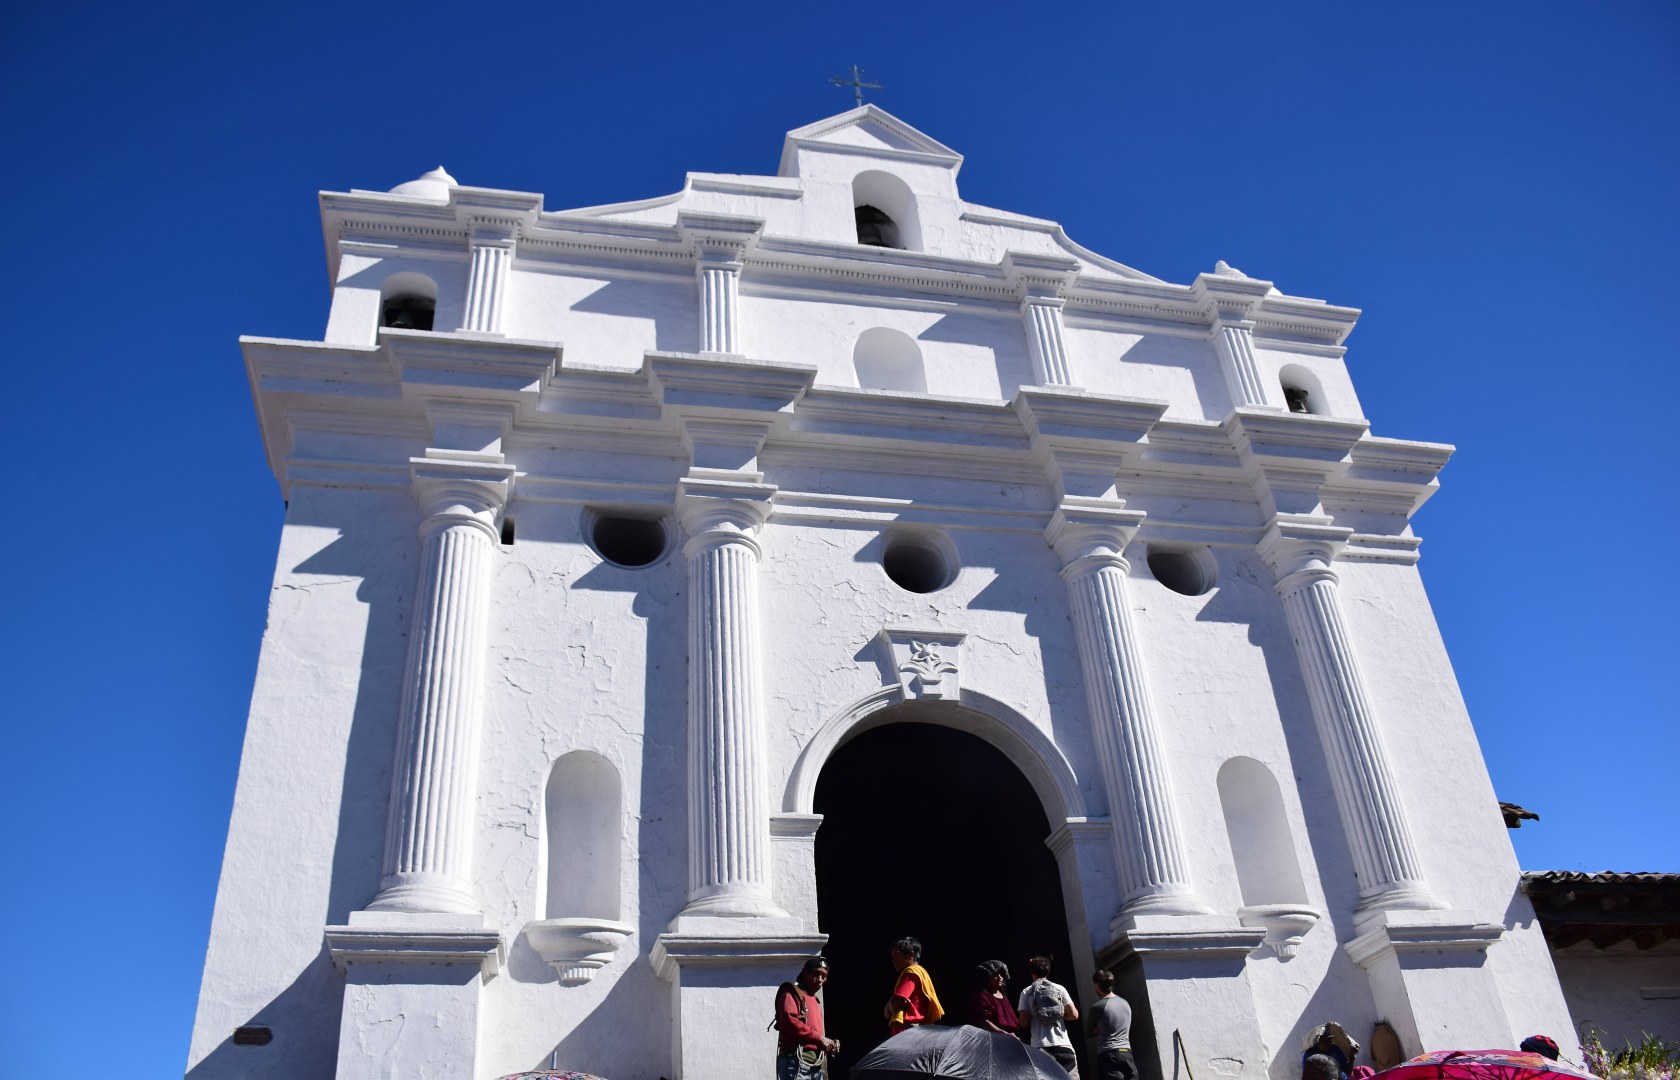 St Thomas Church, Chichicastenango, Guatemala